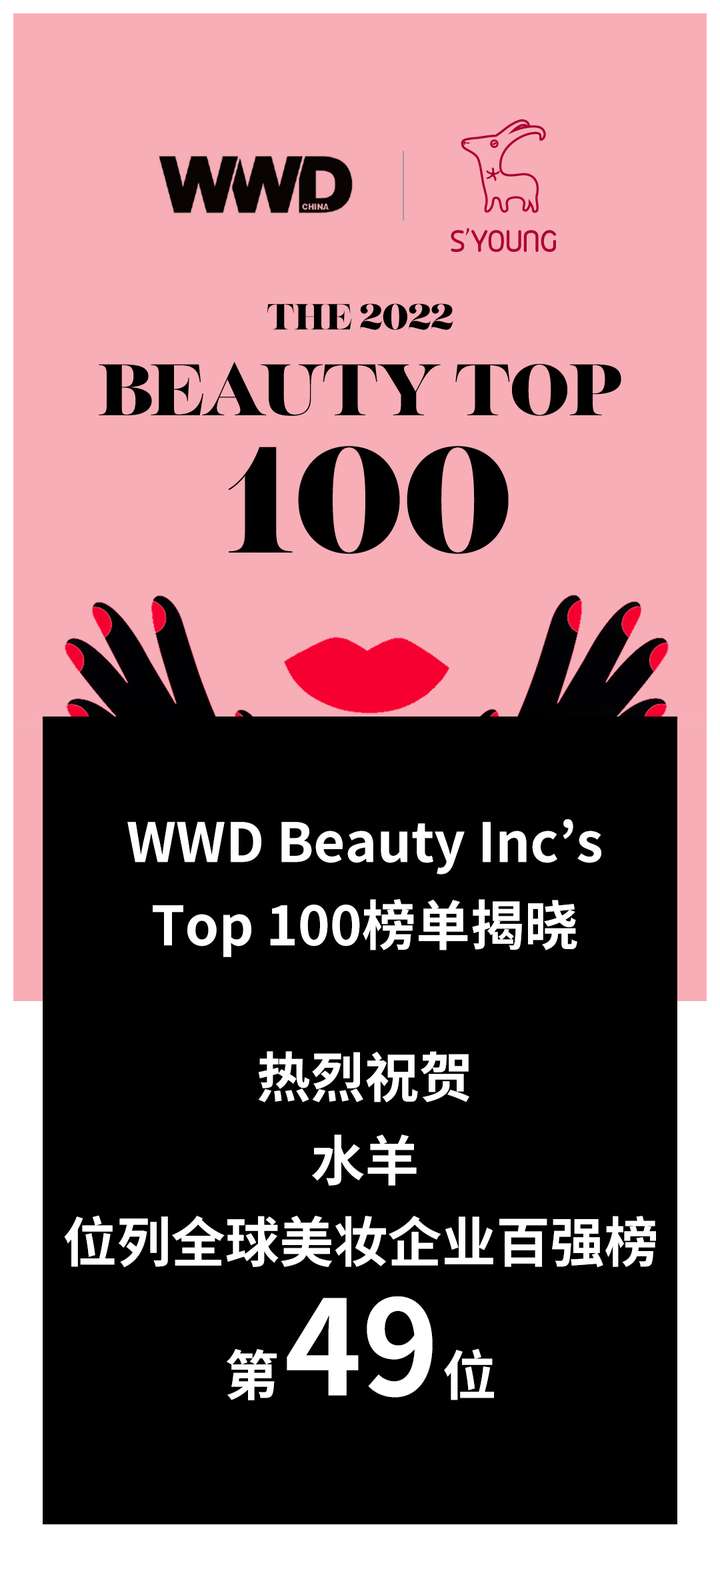 水羊入选WWD BeautyInc全球美妆企业TOP50，持续加码研发看齐“世界第一梯队美妆企业”